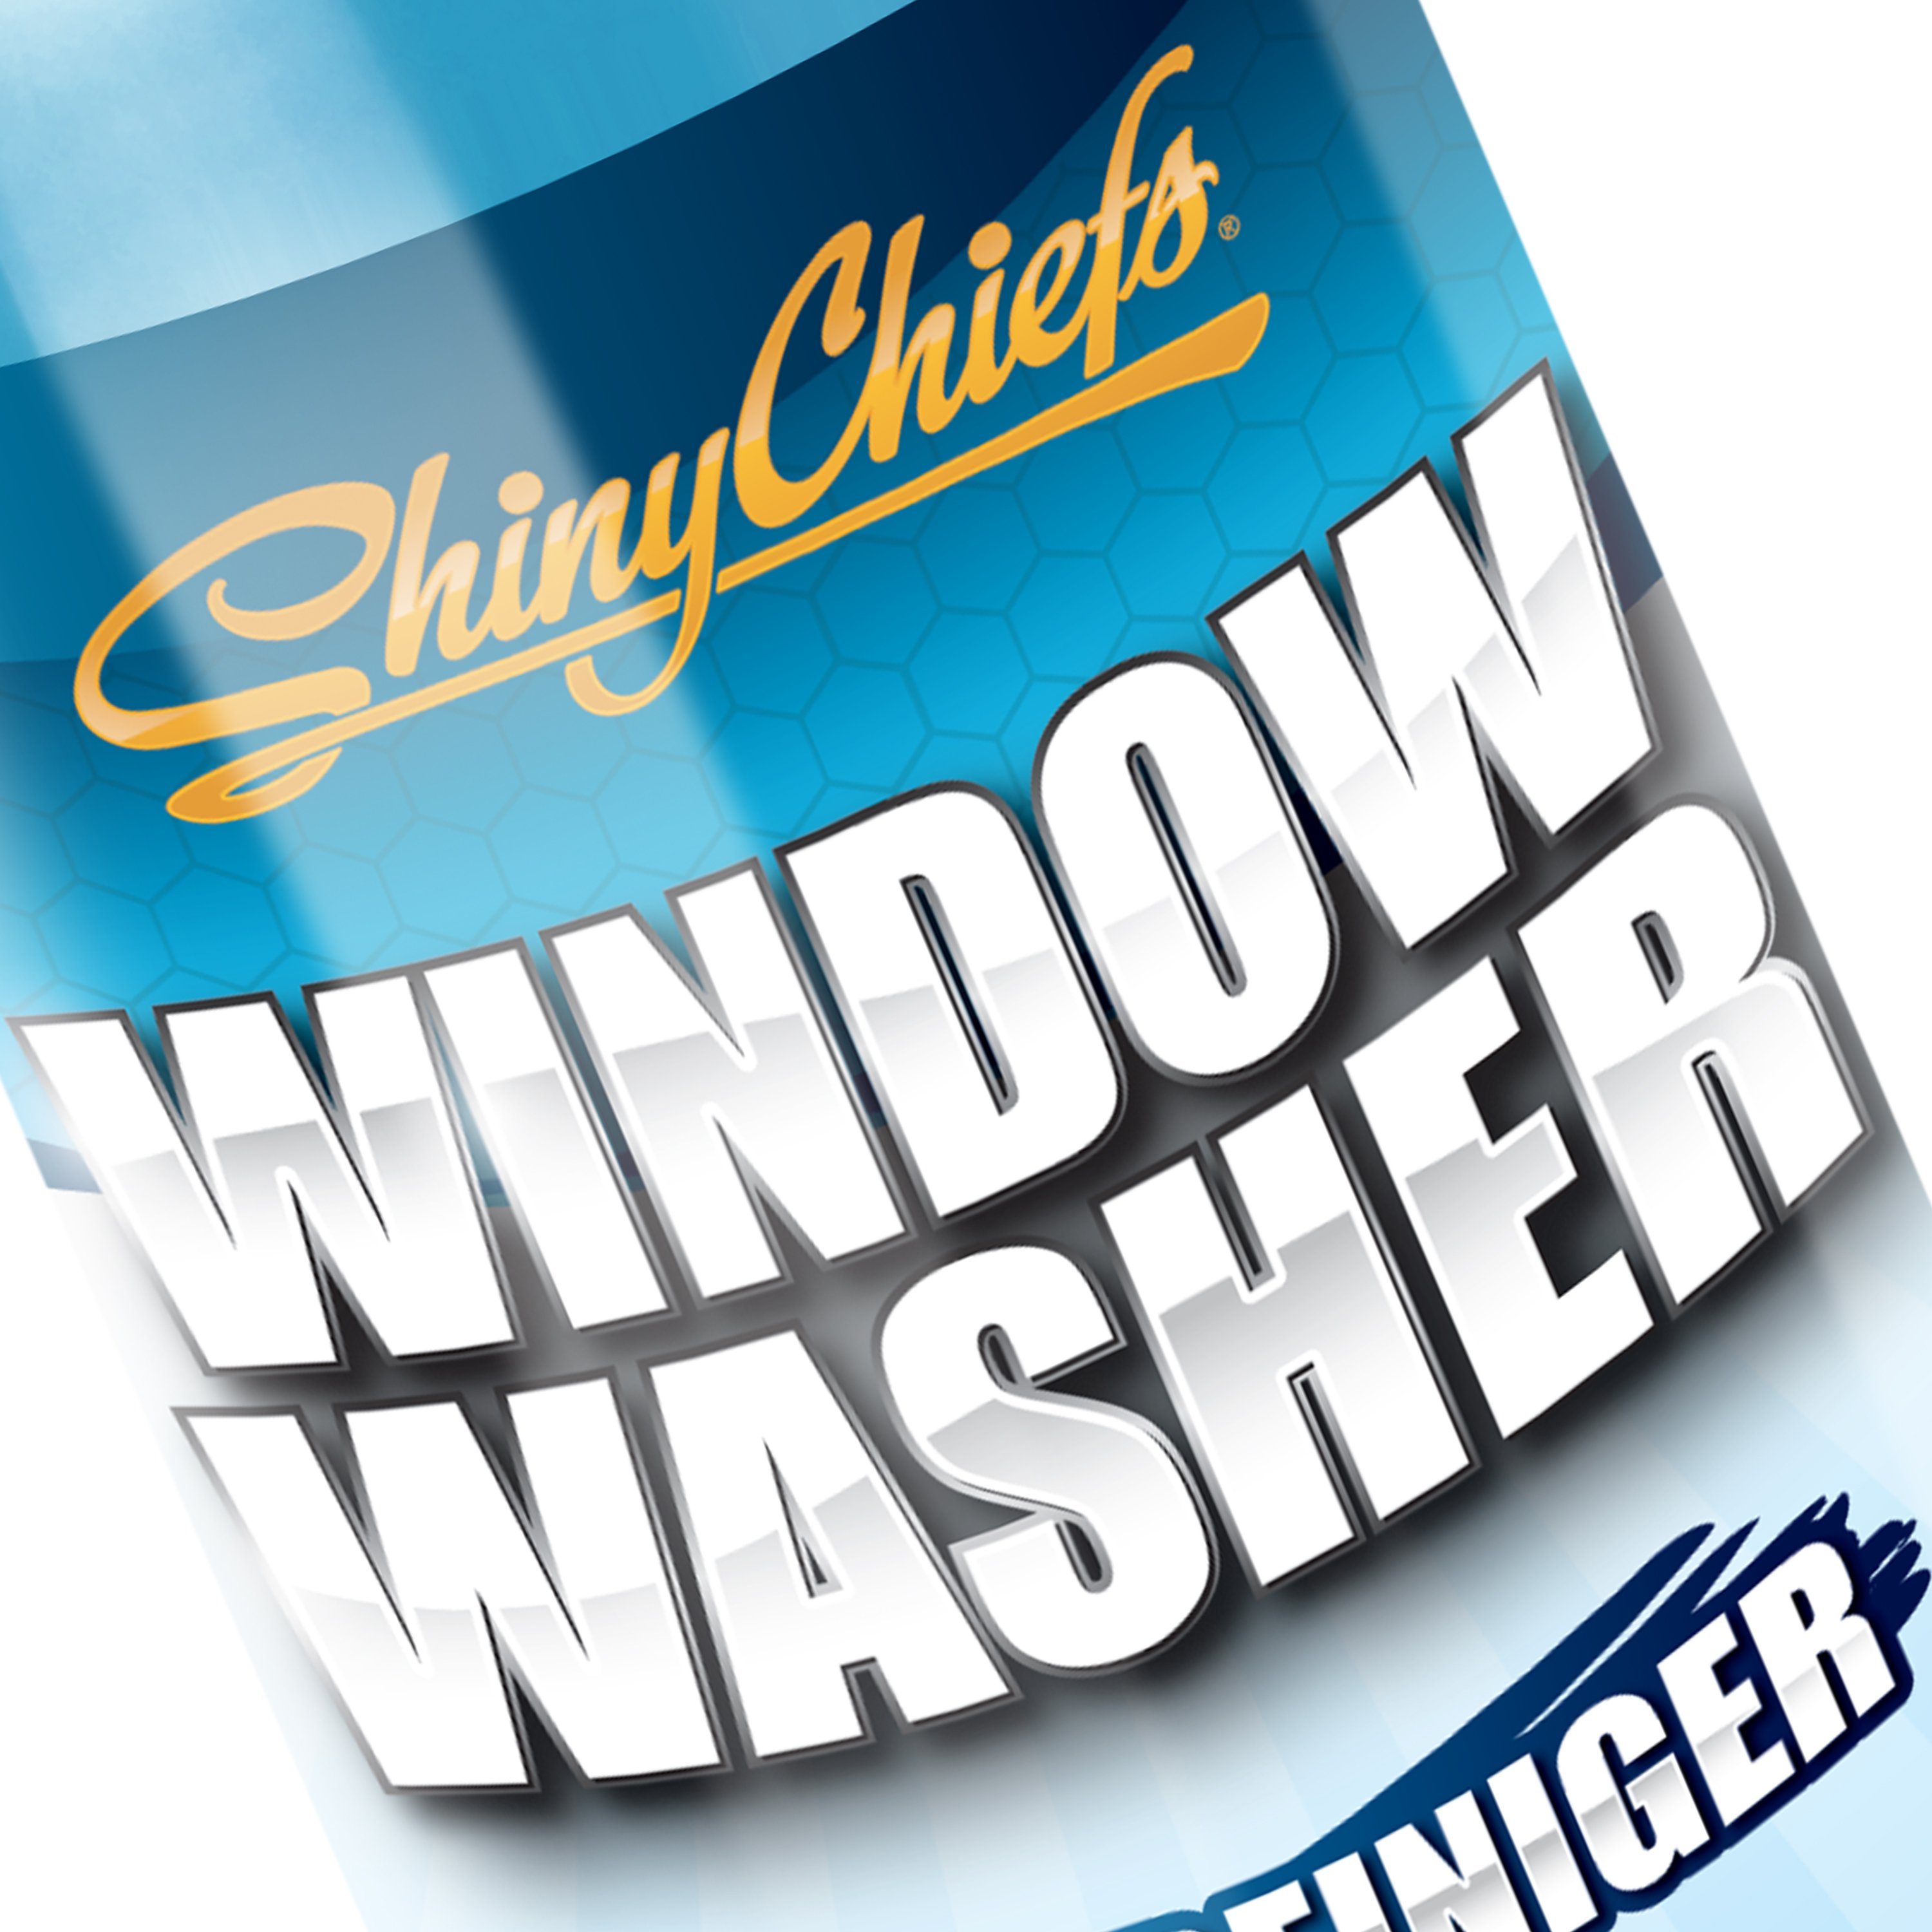 - Auto-Glasreiniger & (1-St. Reinigung) für streifenfreie Glasreiniger - WASHER außen WINDOW ShinyChiefs für innen